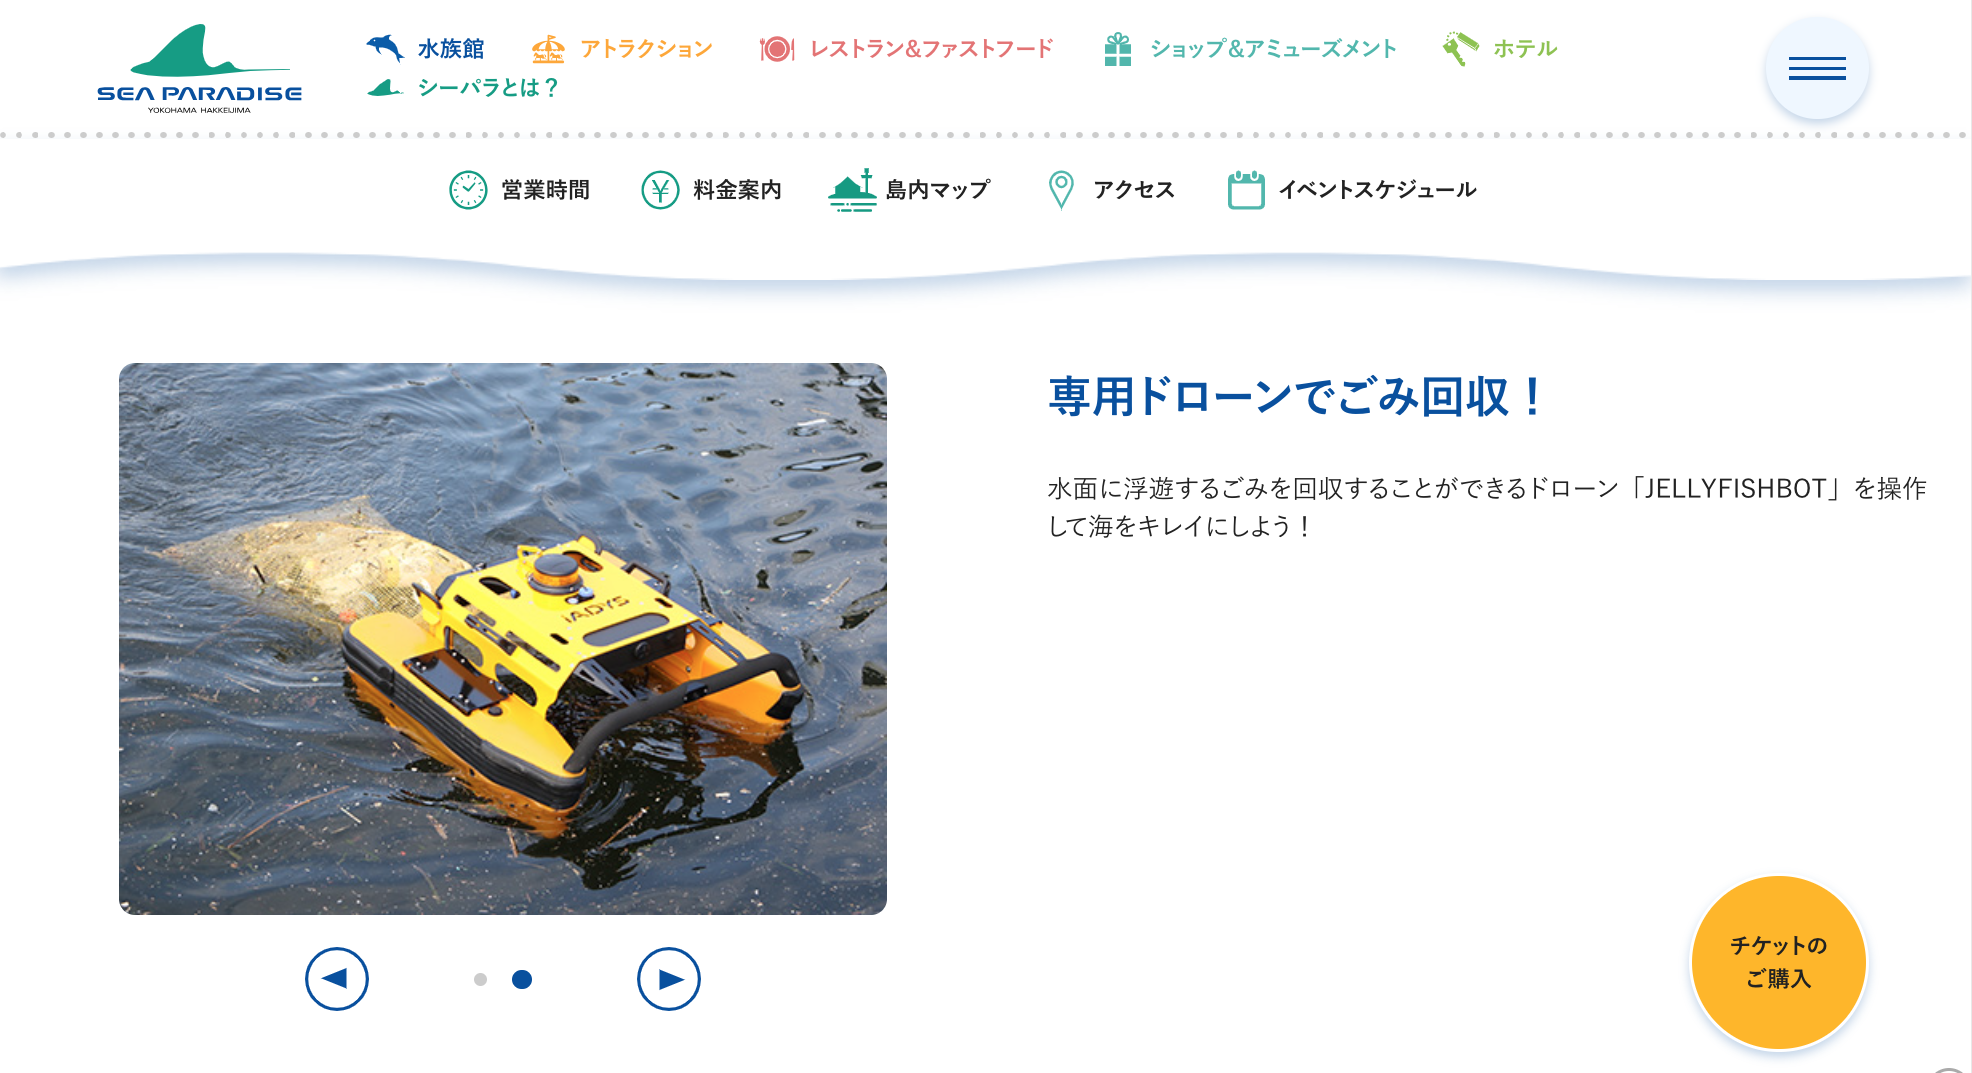 「東京湾ワンダーウォッチャーズ」で「​​JELLYFISHBOT」の操縦体験